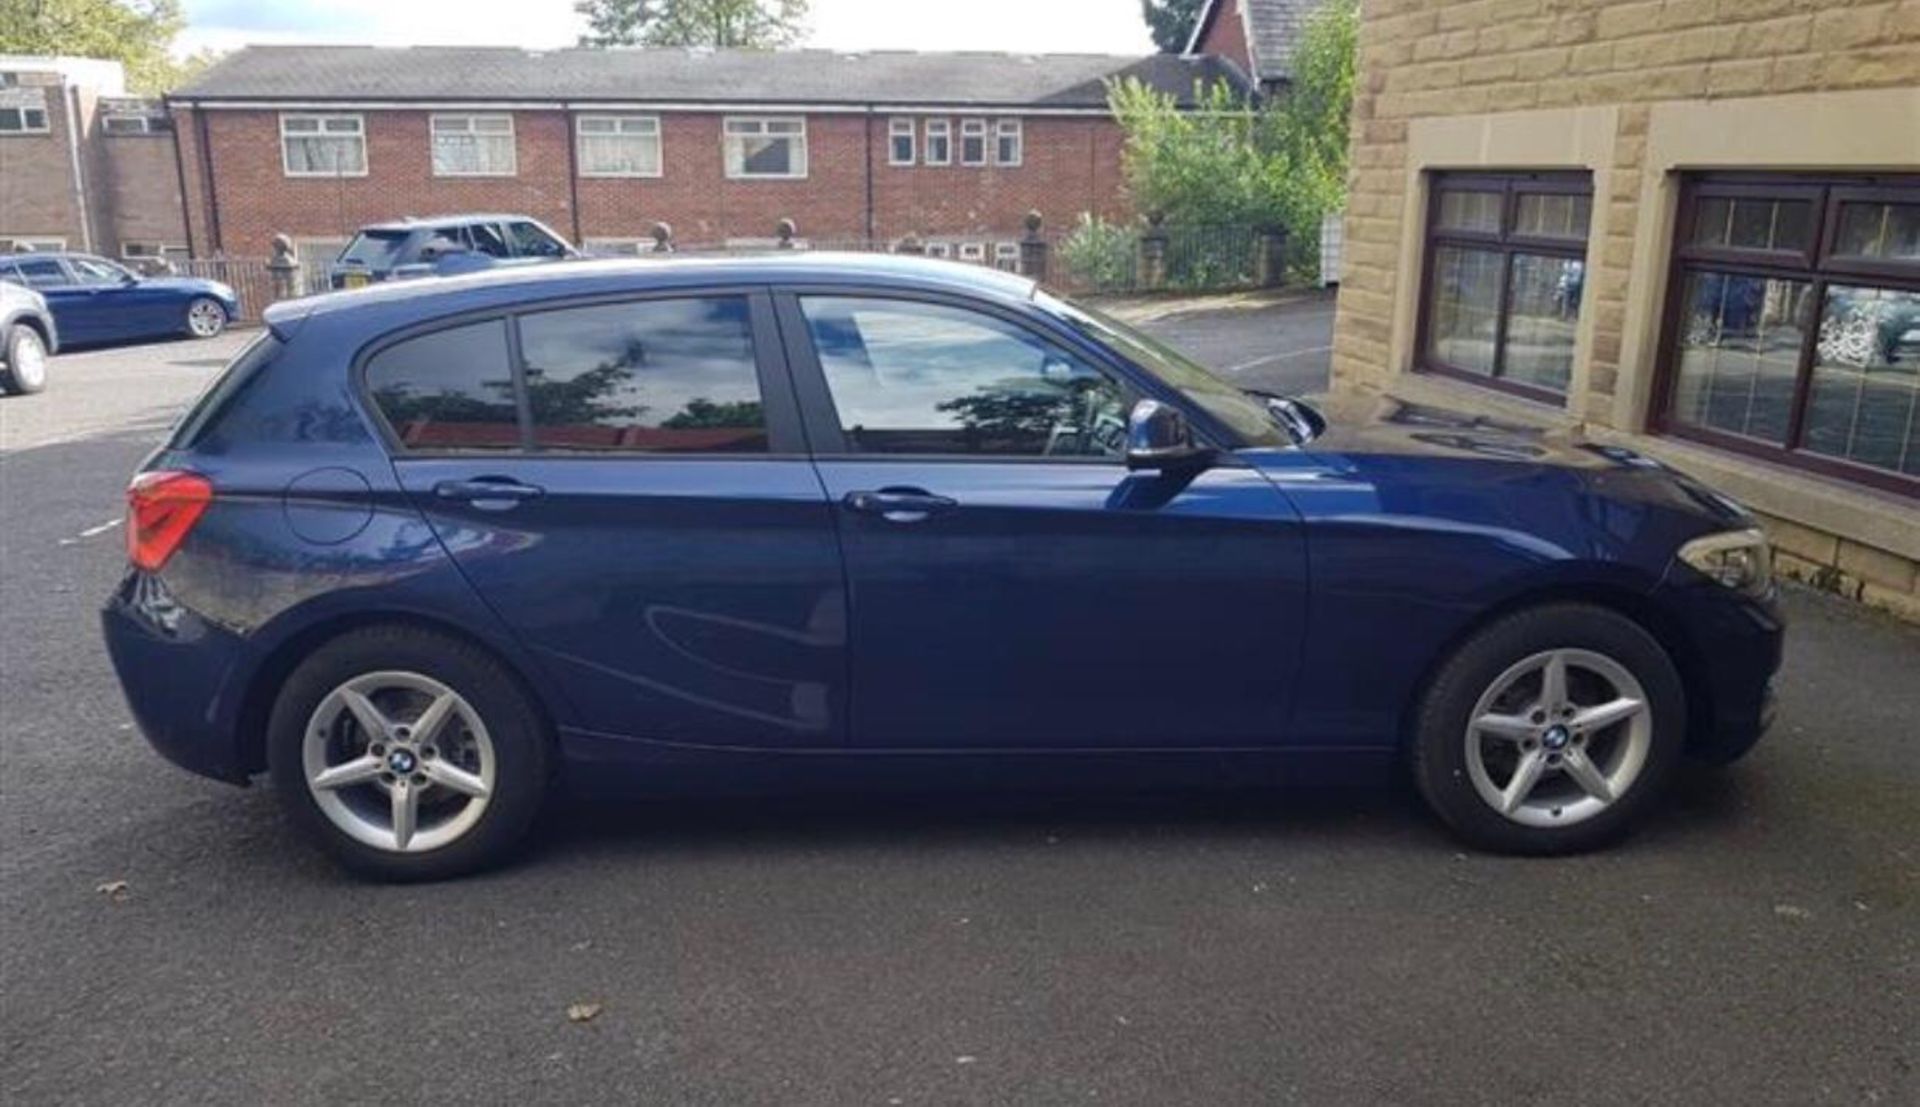 2018/67 REG BMW 118D SE AUTOMATIC BLUE DIESEL 5 DOOR HATCHBACK, SHOWING 0 FORMER KEEPERS *PLUS VAT* - Image 9 of 18